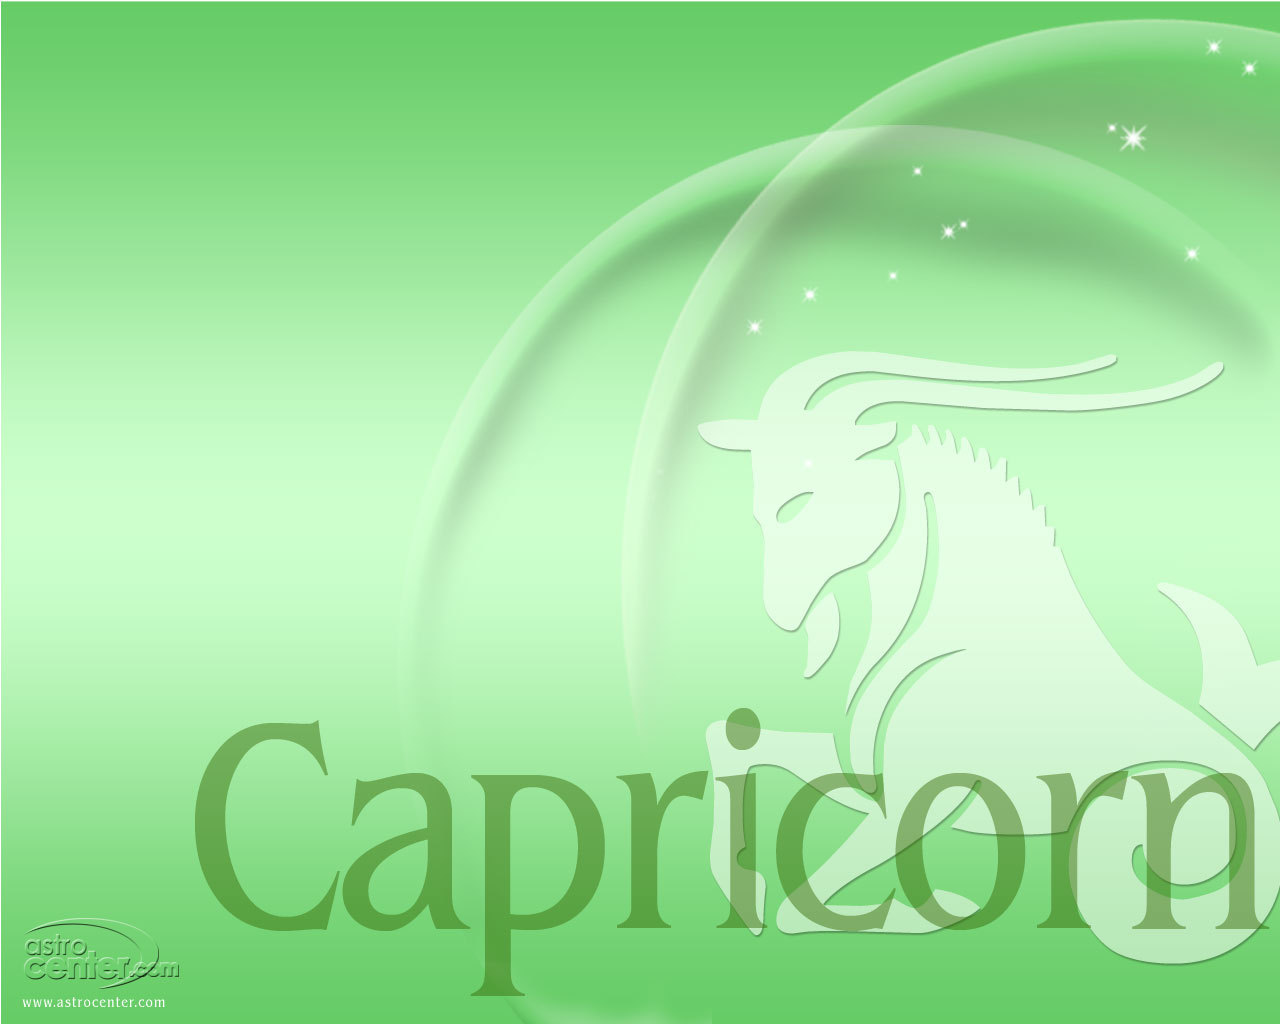 Cap Capricorn Wallpaper